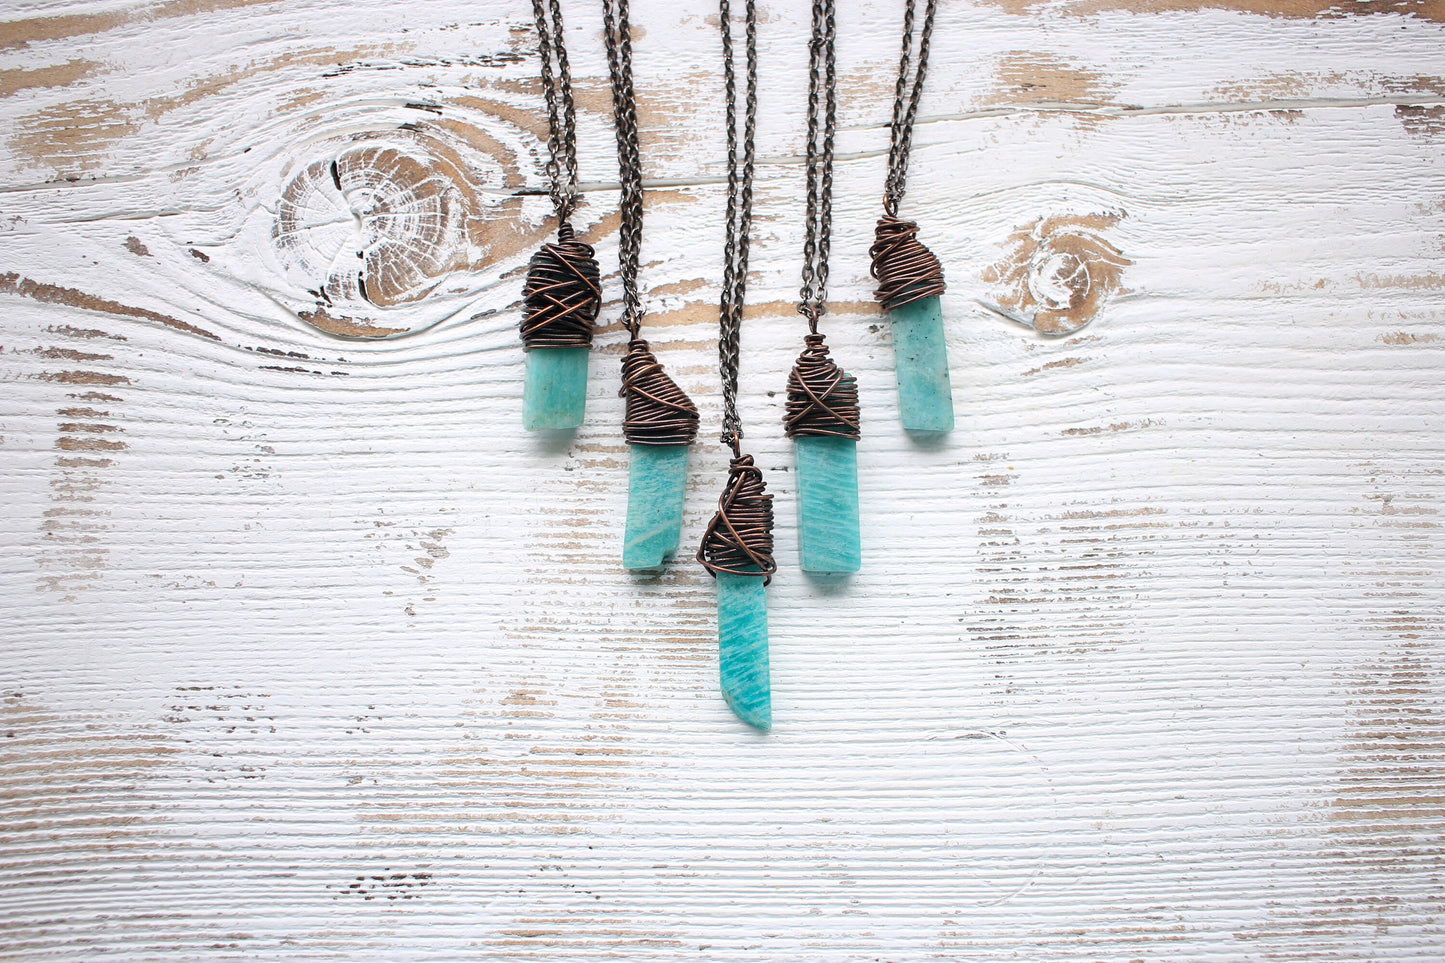 Amazonite Necklace - Aqua Crystal Necklace -Polished Crystal Necklace- Healing Crystal - Peace, Communication, Balance